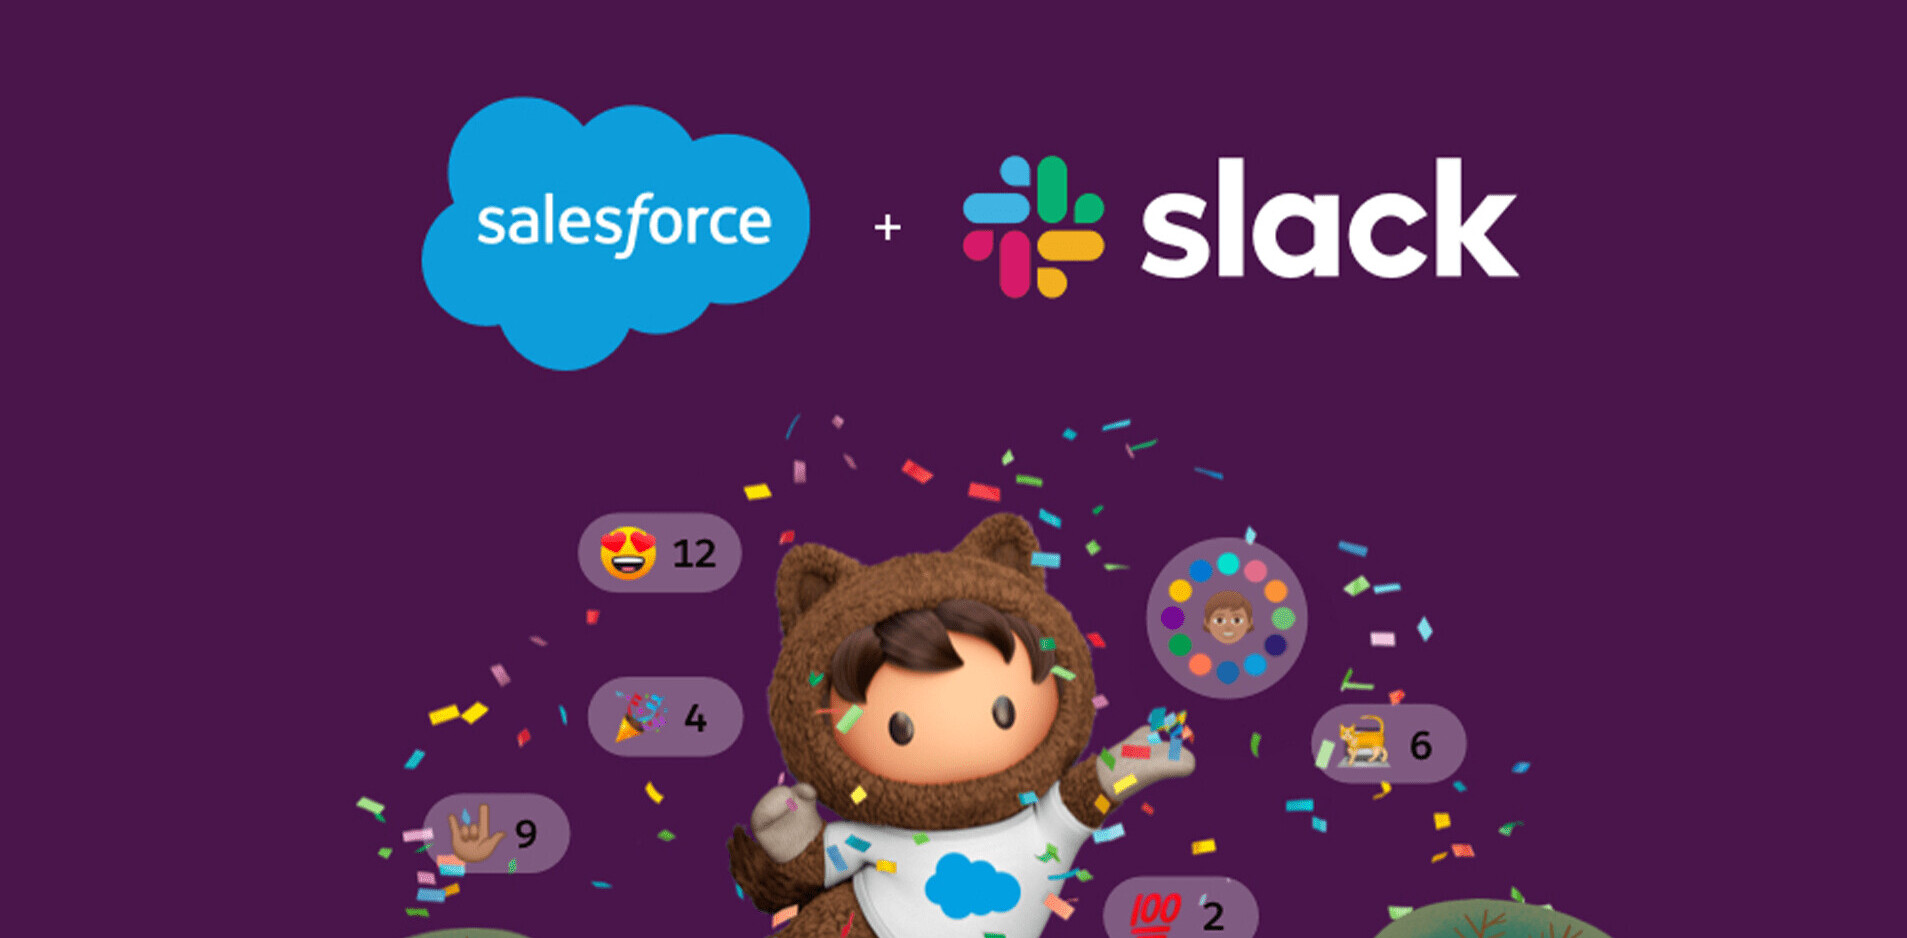 Salesforce is buying Slack for $28 billion